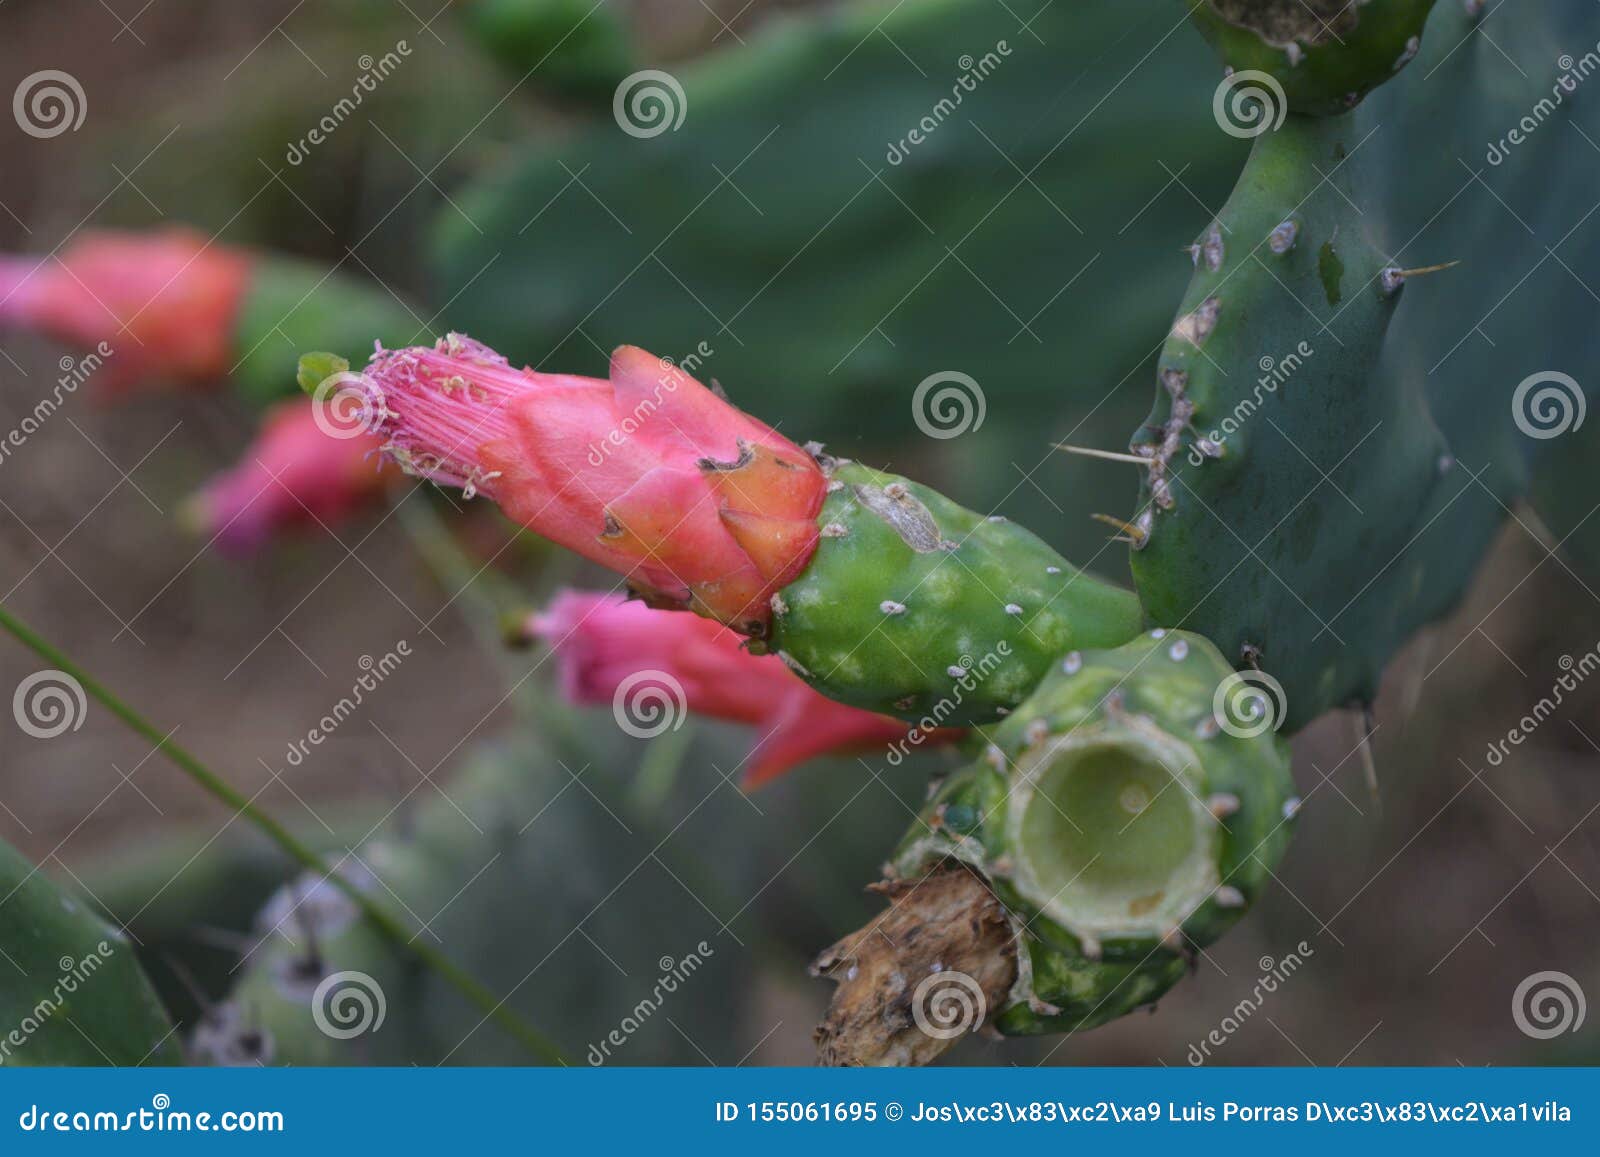 cactus flower.